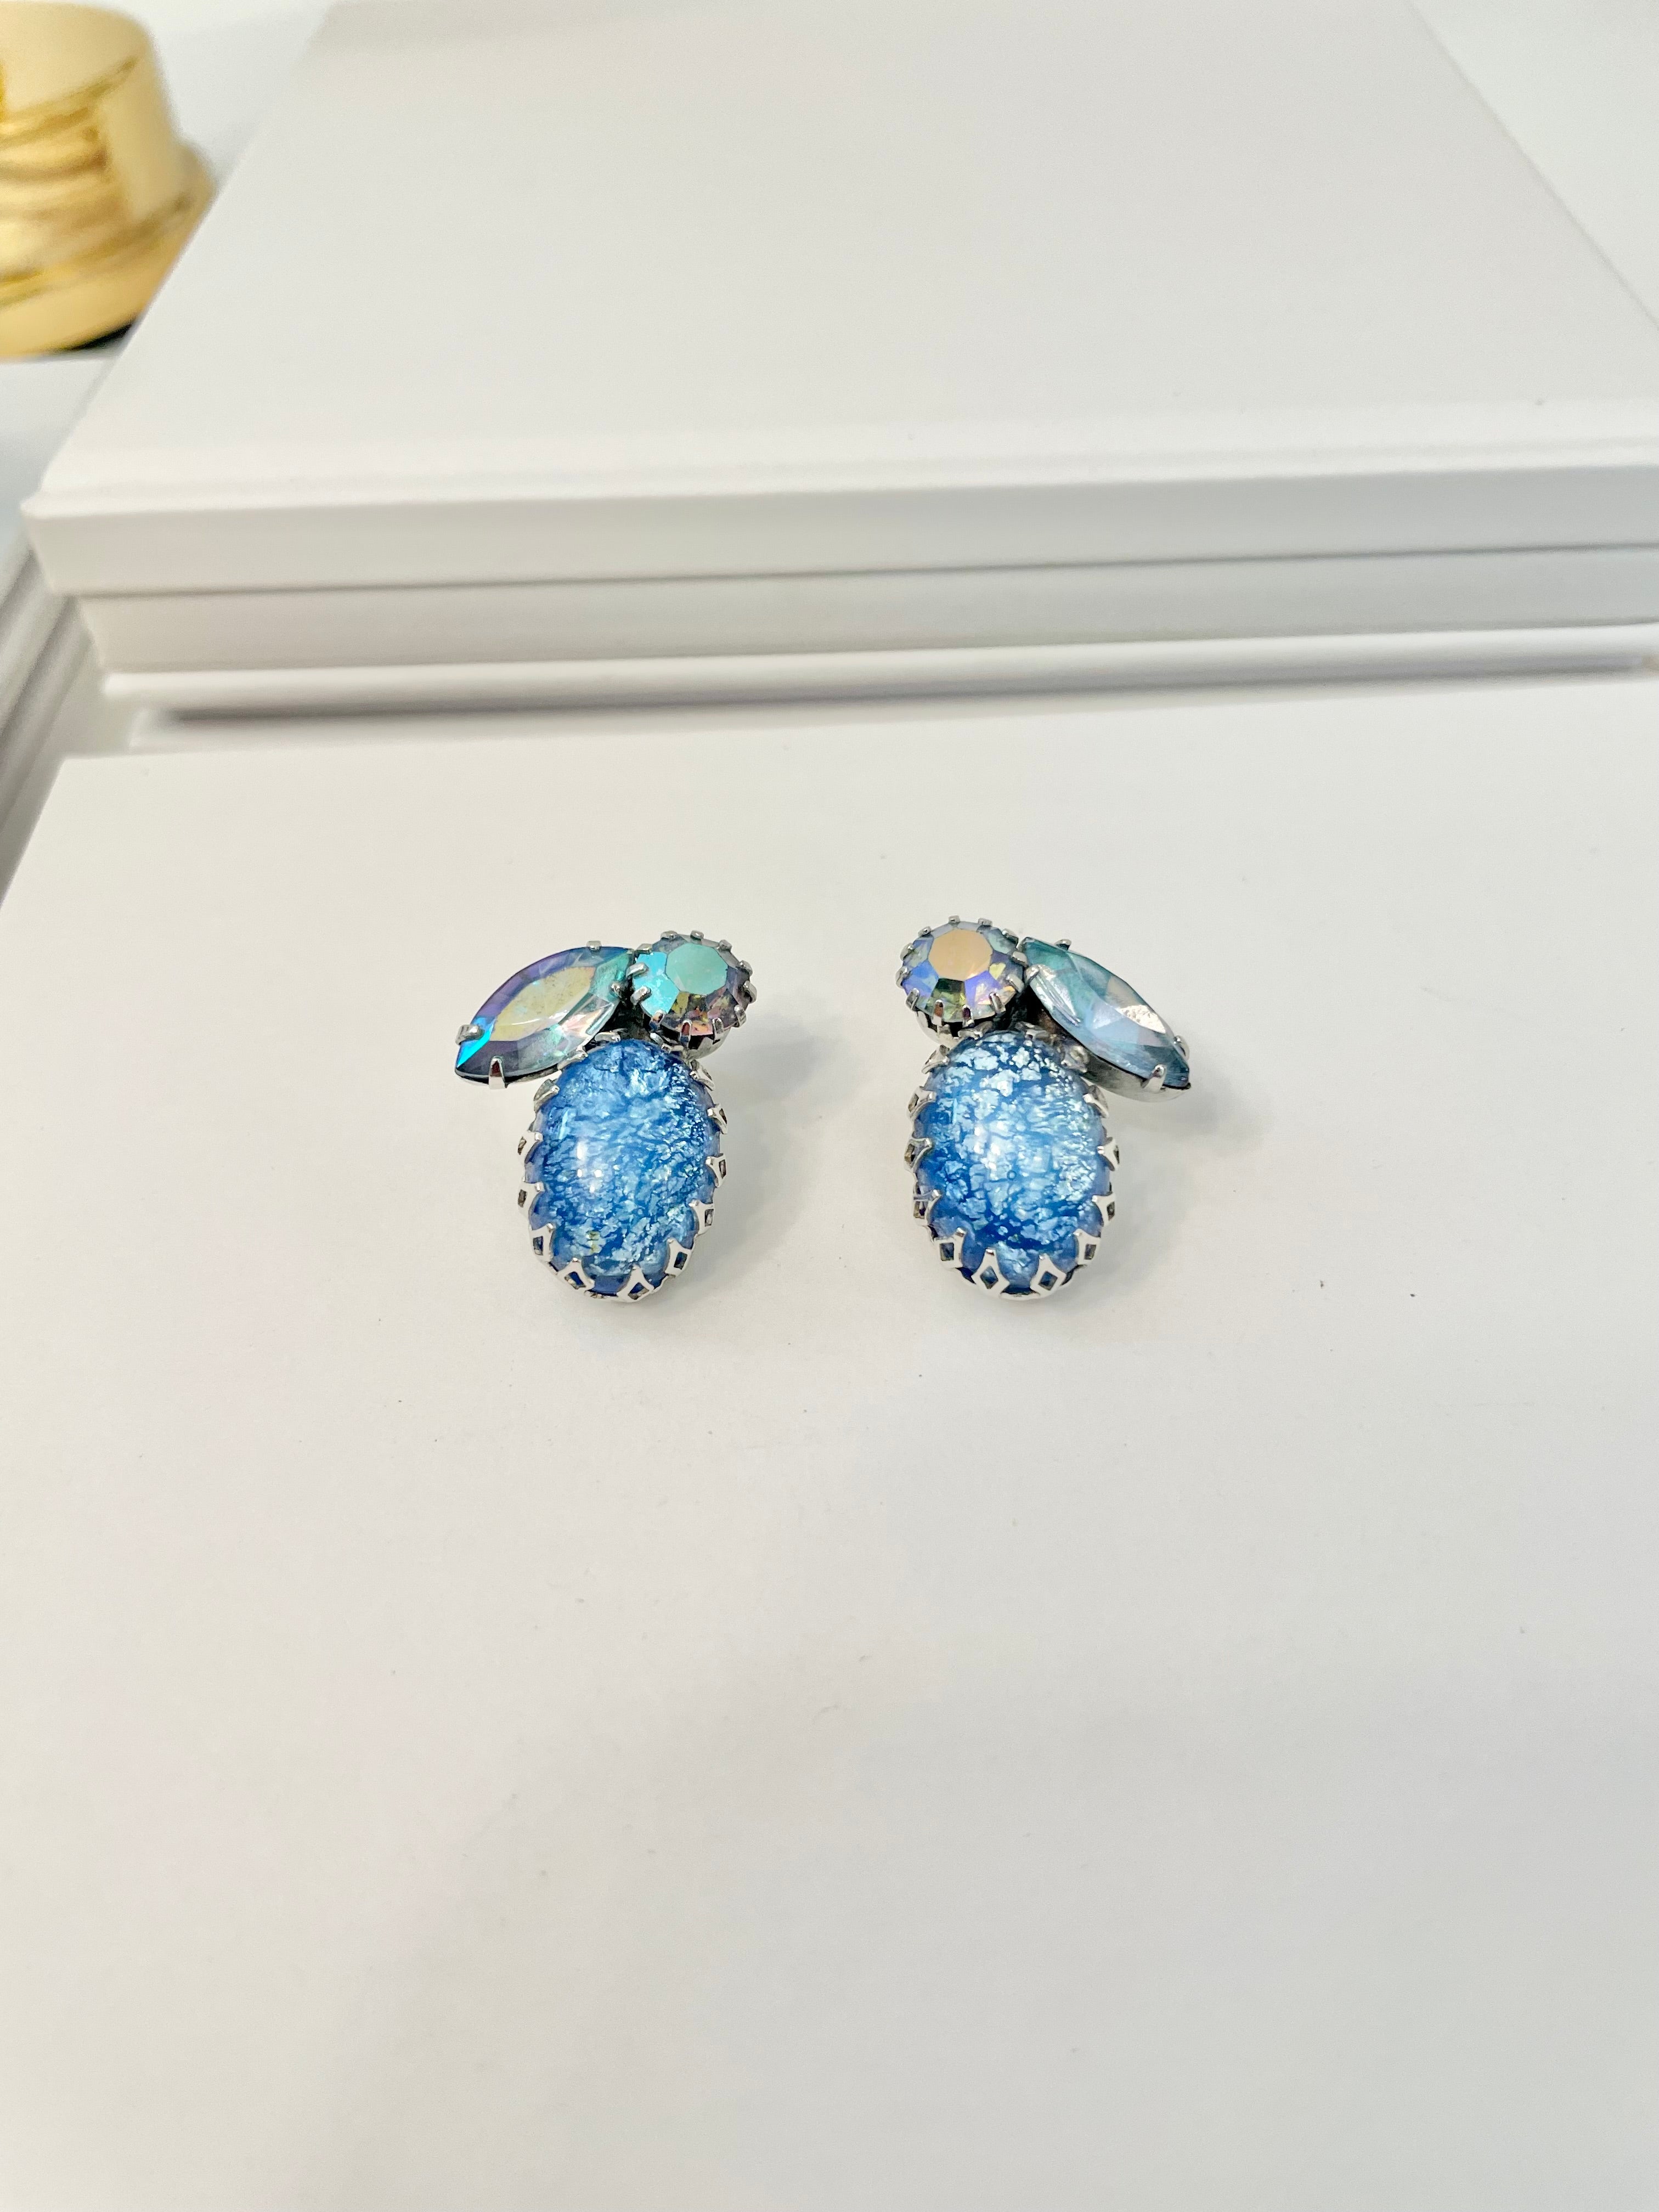 Vintage 1960's Coro blue glass stunning earrings... so elegant